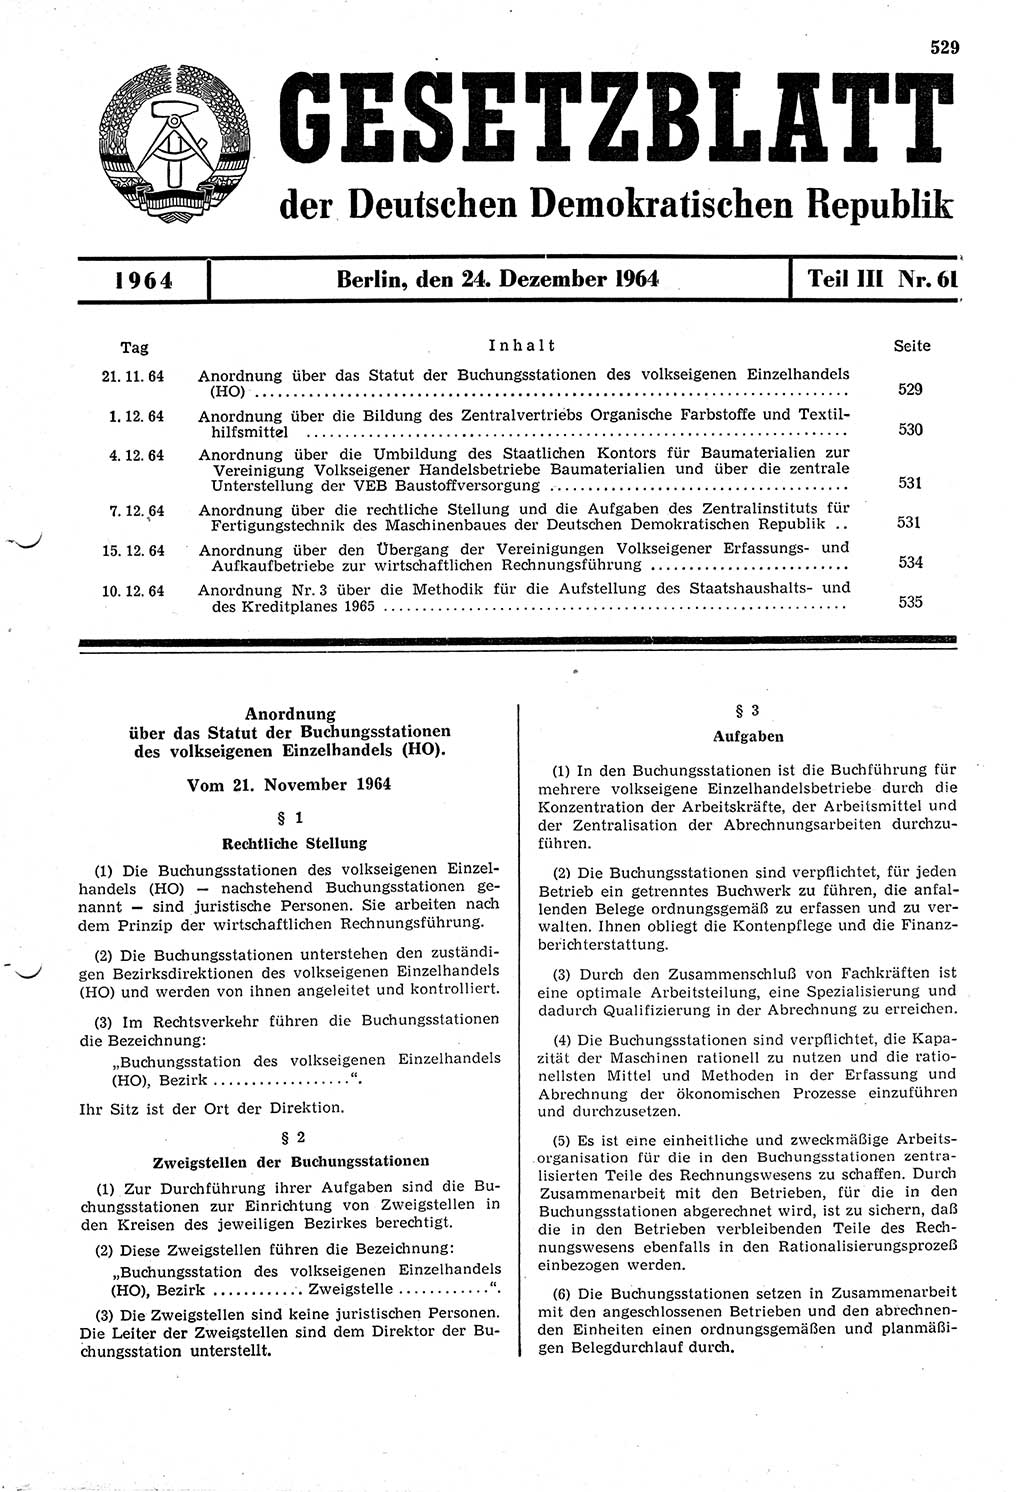 Gesetzblatt (GBl.) der Deutschen Demokratischen Republik (DDR) Teil ⅠⅠⅠ 1964, Seite 529 (GBl. DDR ⅠⅠⅠ 1964, S. 529)